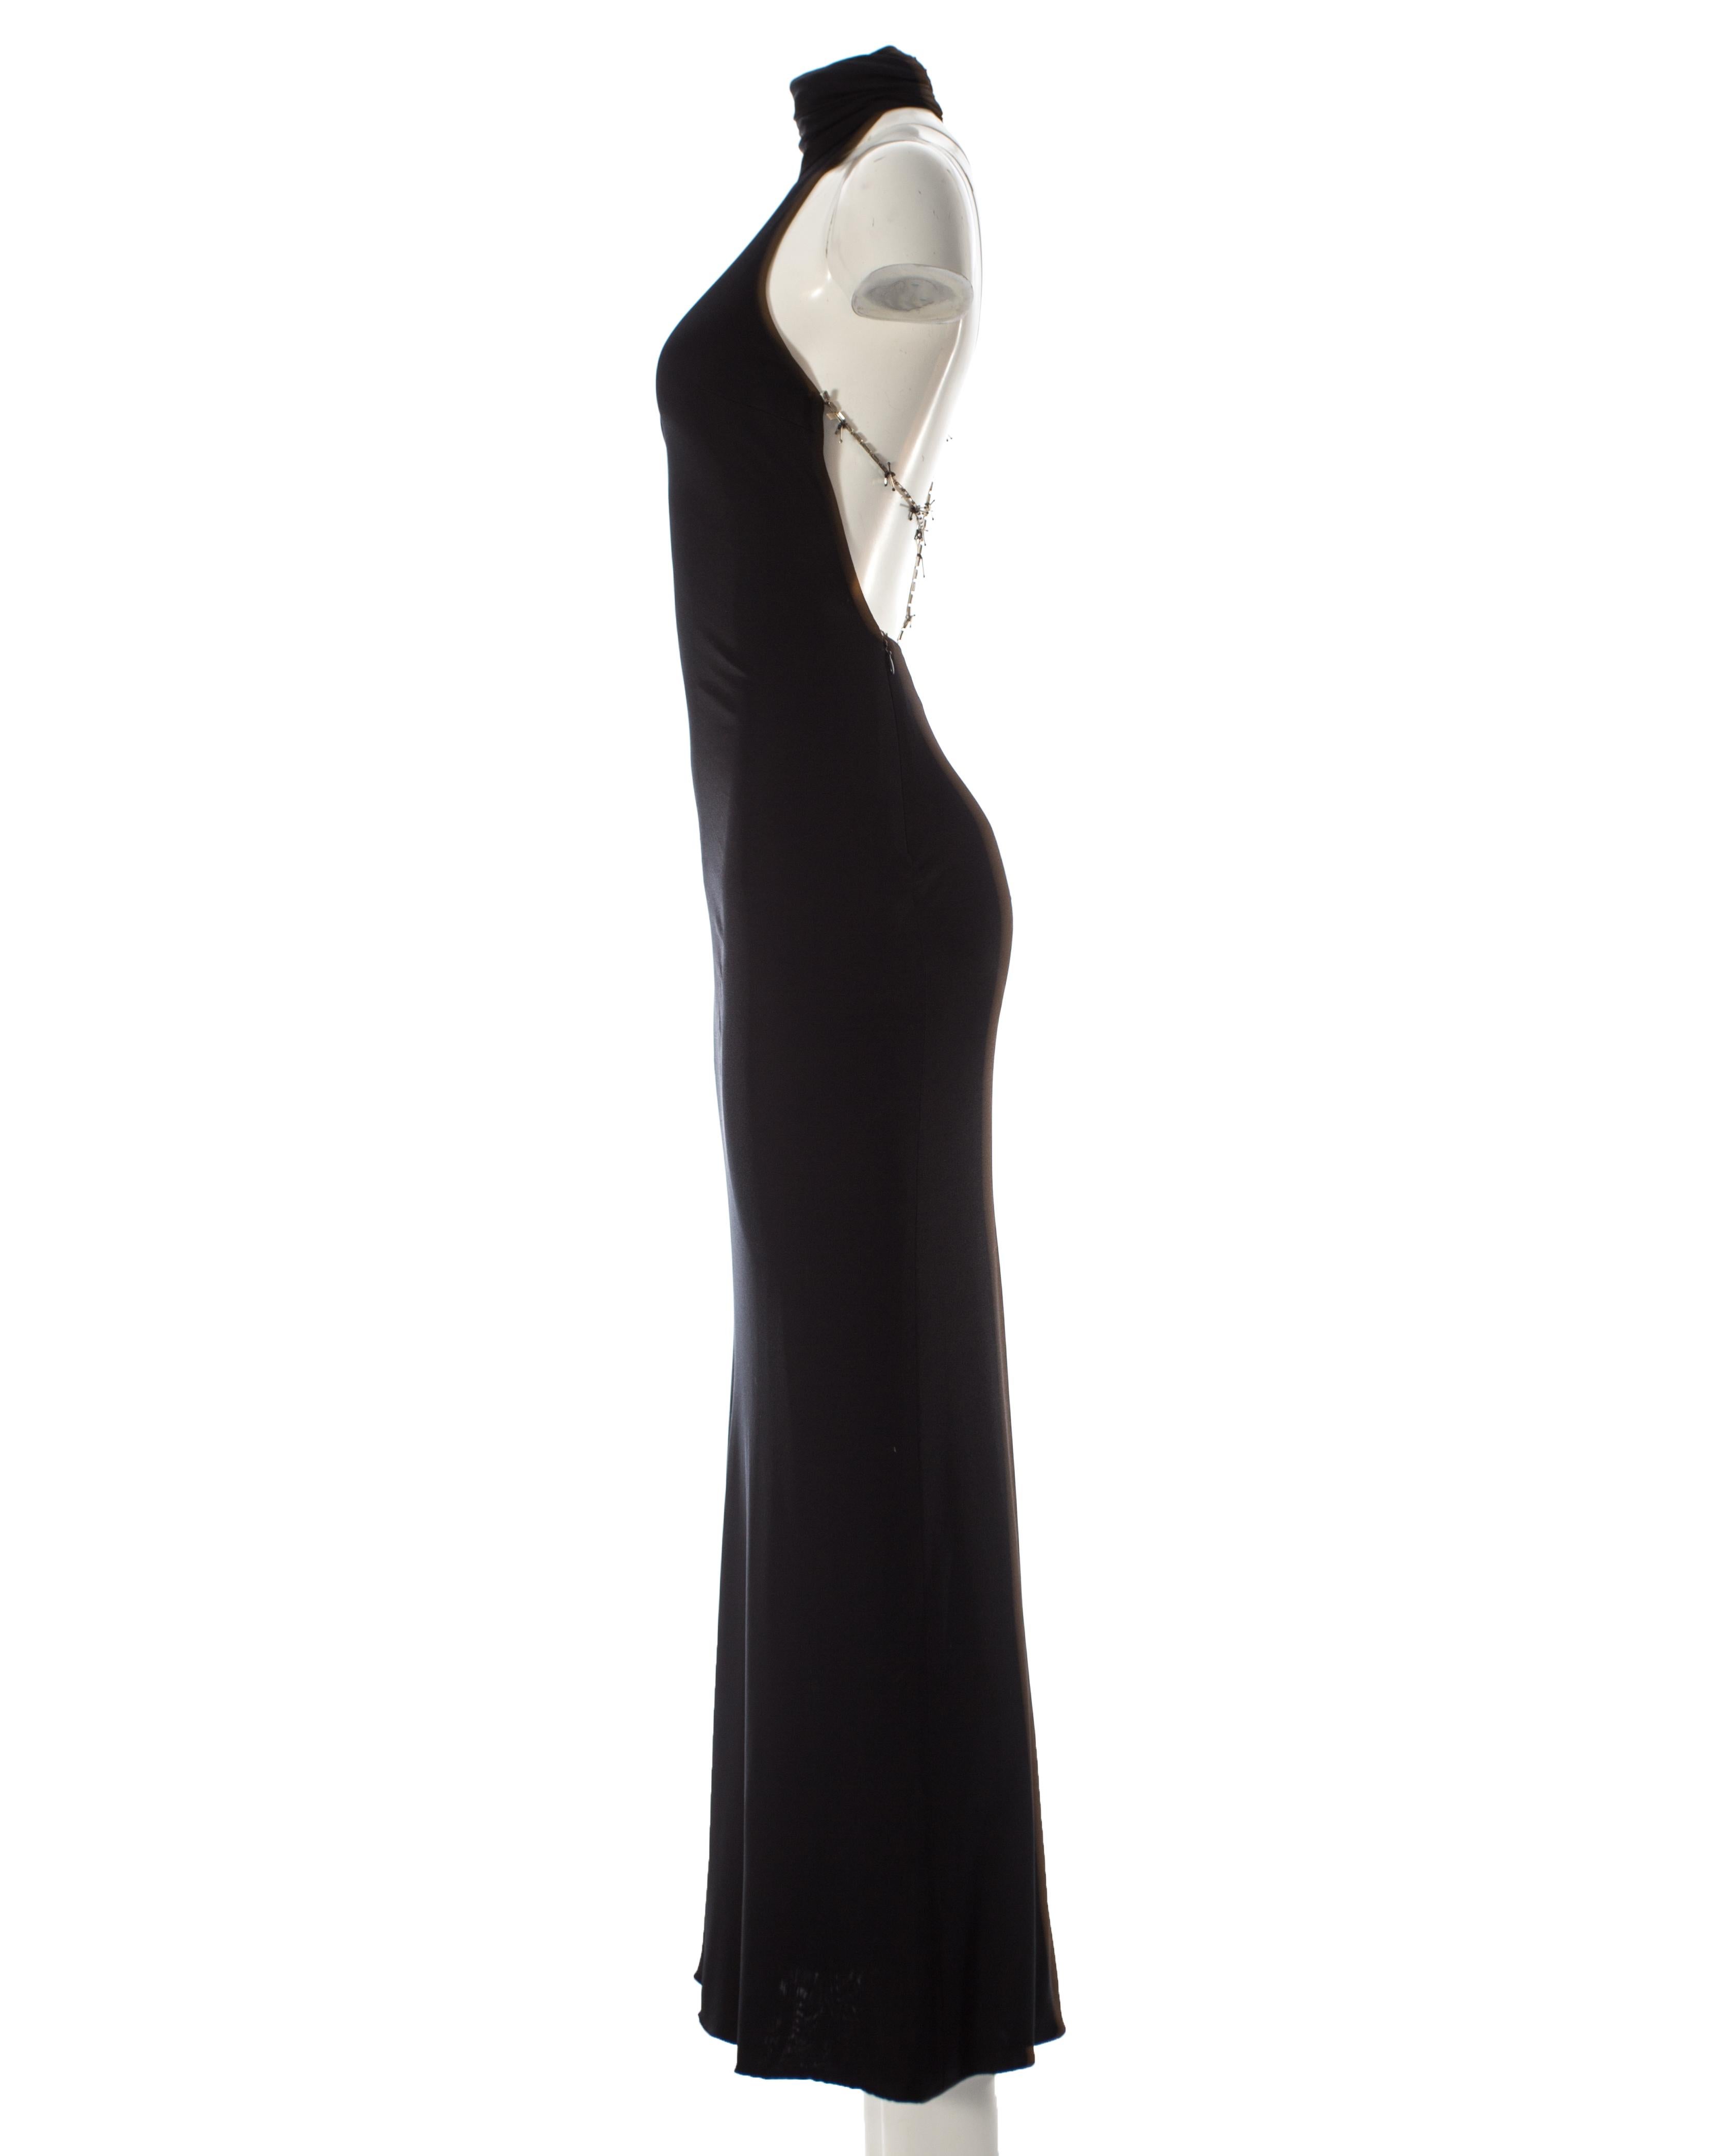 Gianni Versace black silk jersey backless evening dress, AW 1998 2